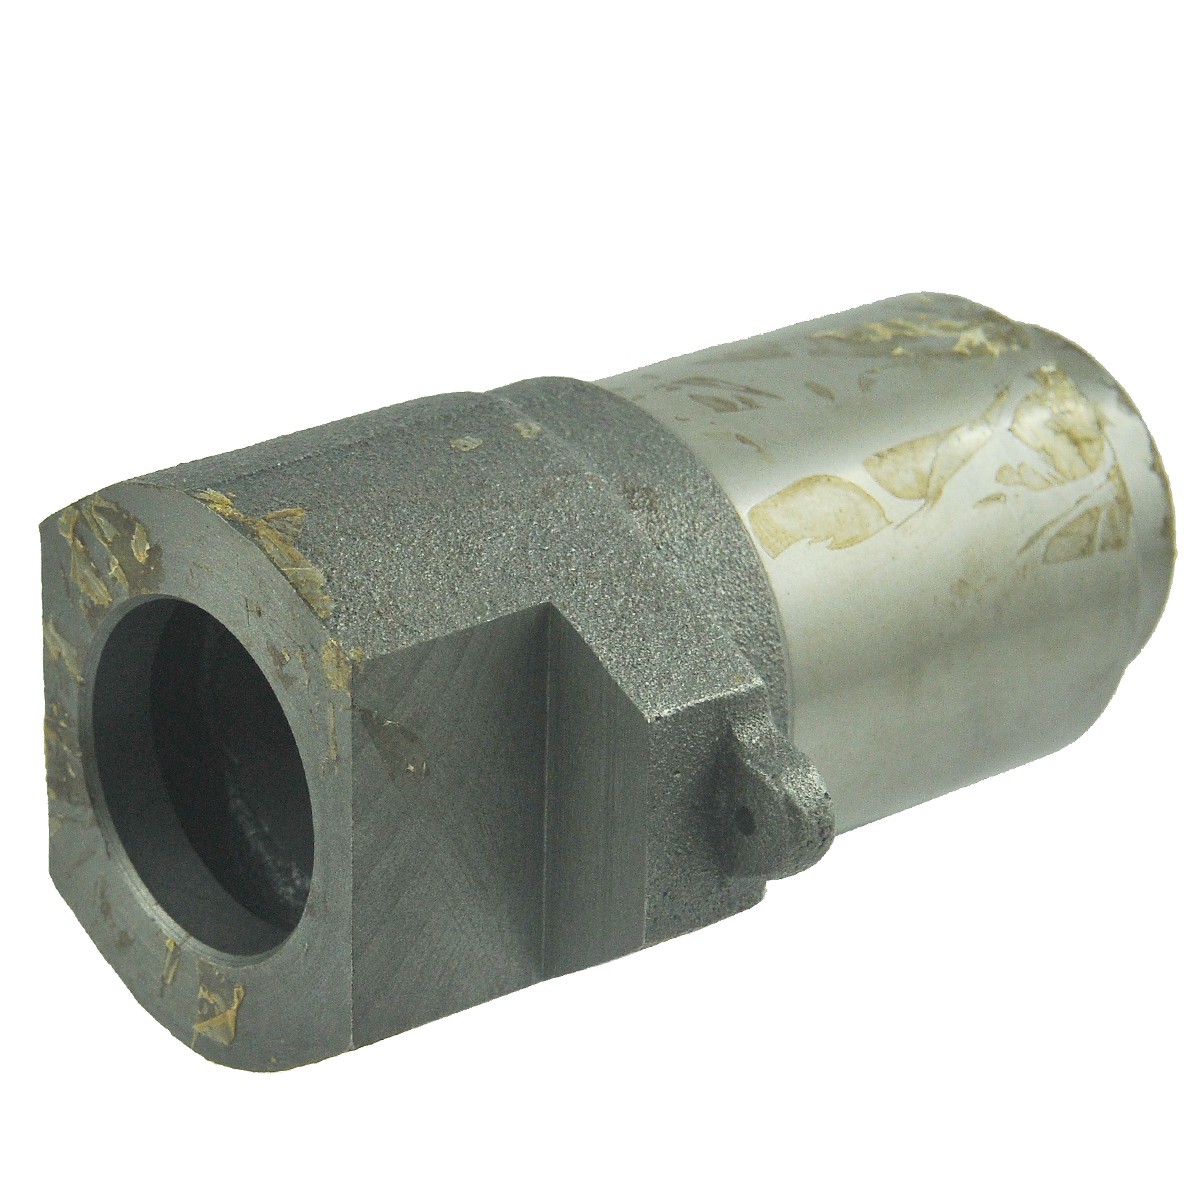 Clutch bearing support / Ø 37 mm / Yanmar EF453T / Yanmar 4TNV88 / 1A7780-22220 / 5-15-247-41